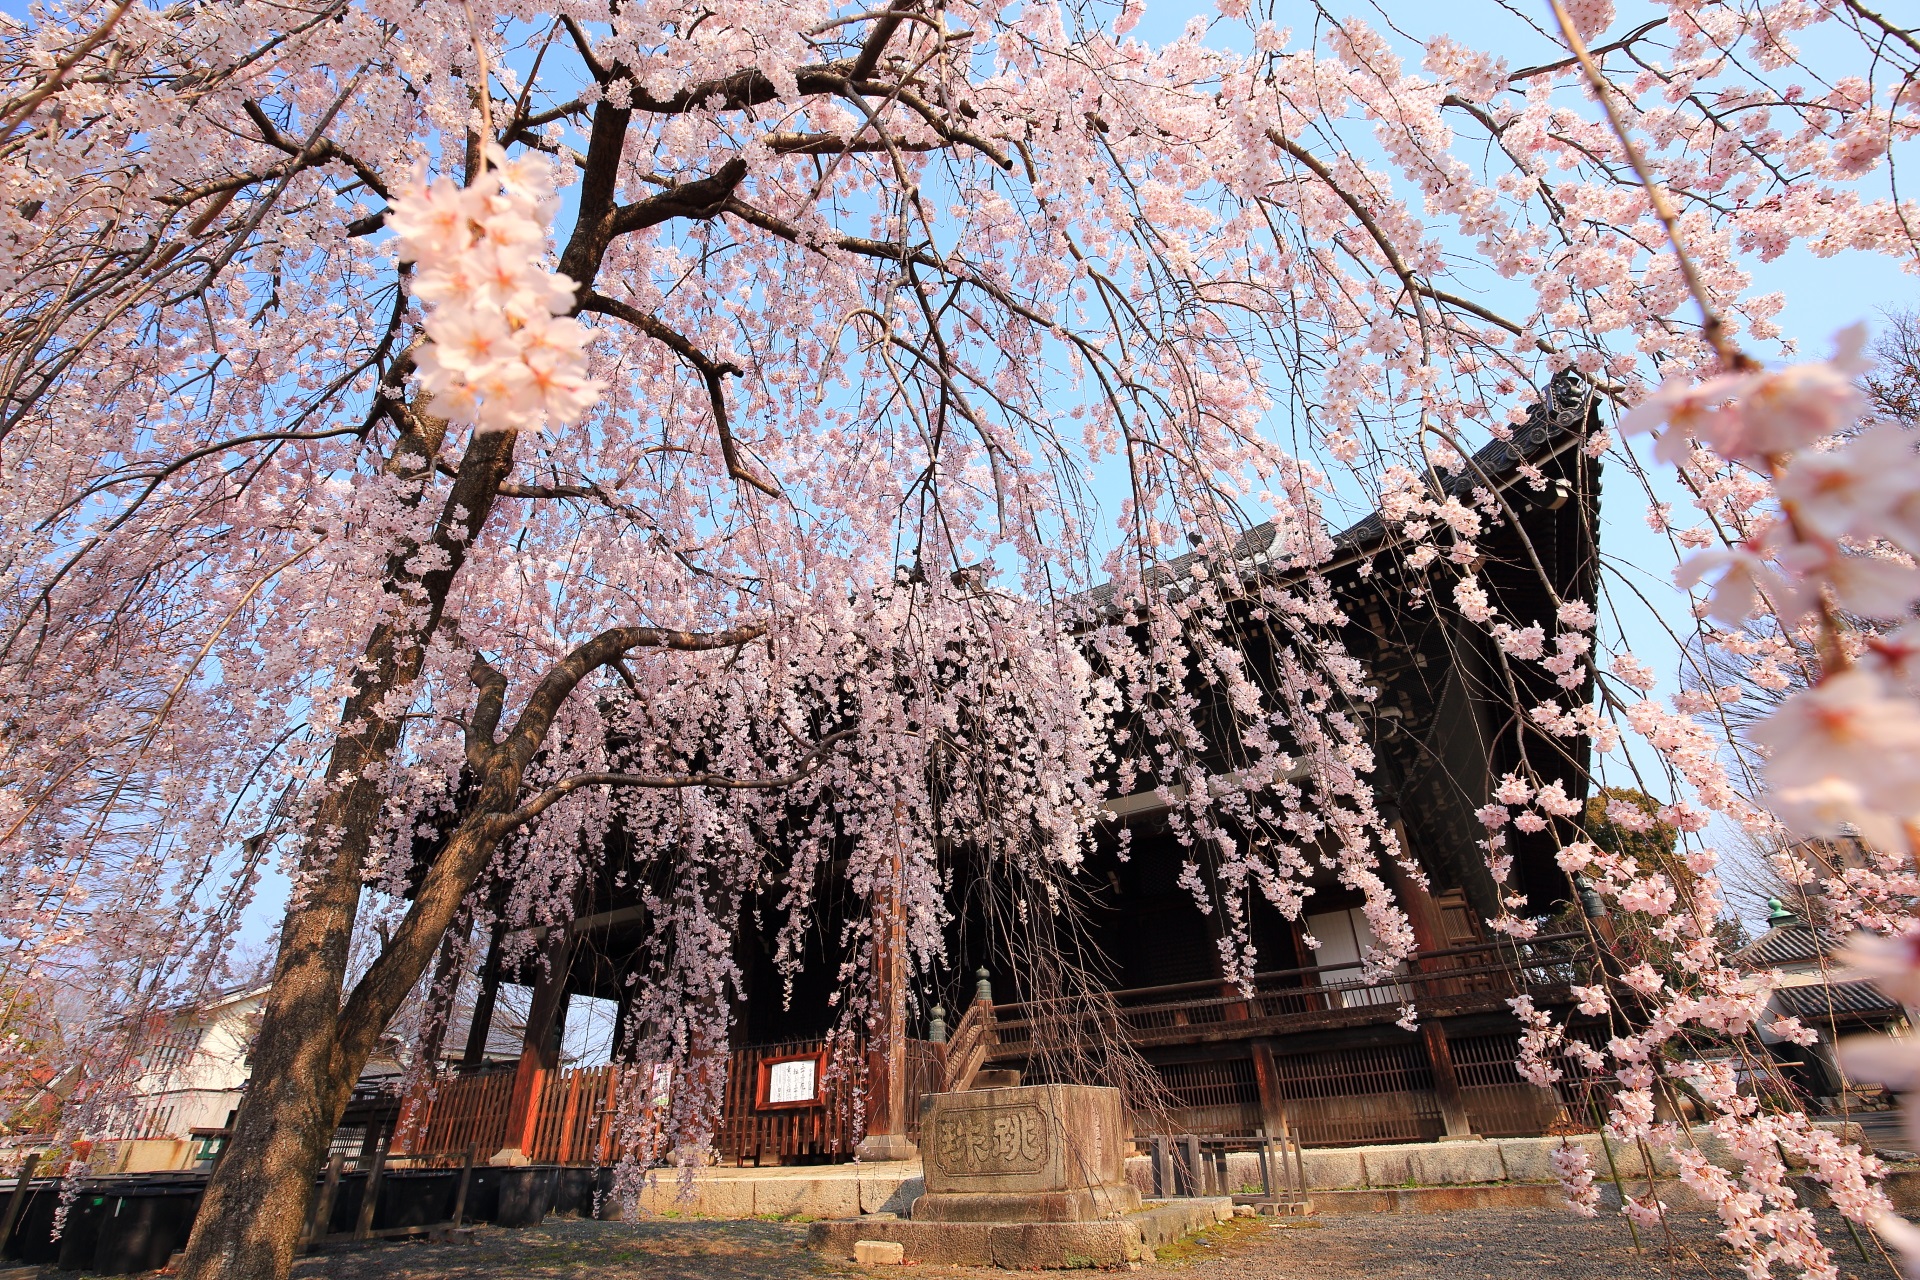 立本寺の春色のシャワーのようなしだれ桜